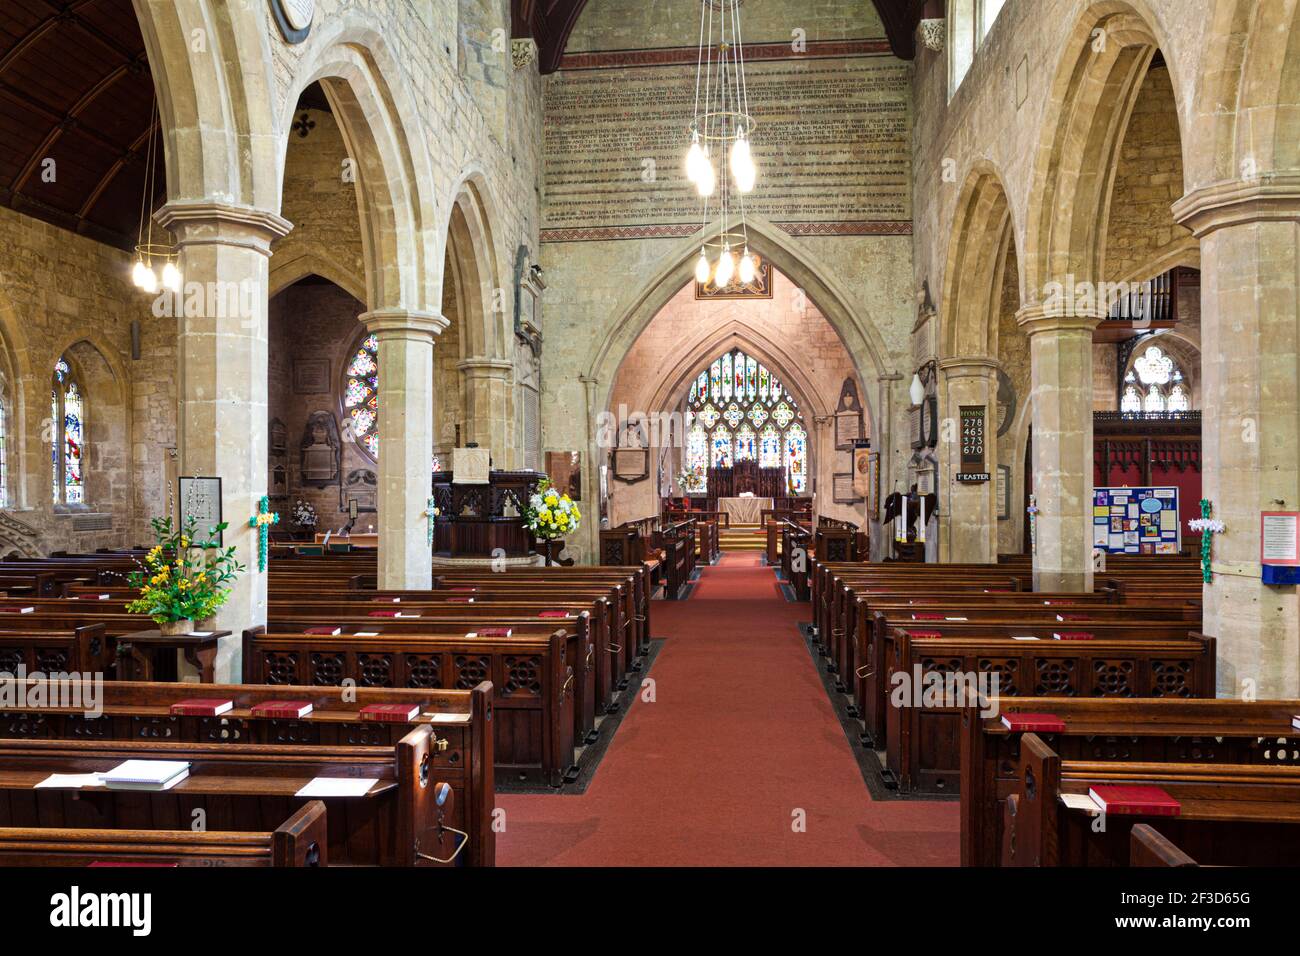 Intérieur de l'église St Marys, Cheltenham, Gloucestershire Royaume-Uni Banque D'Images